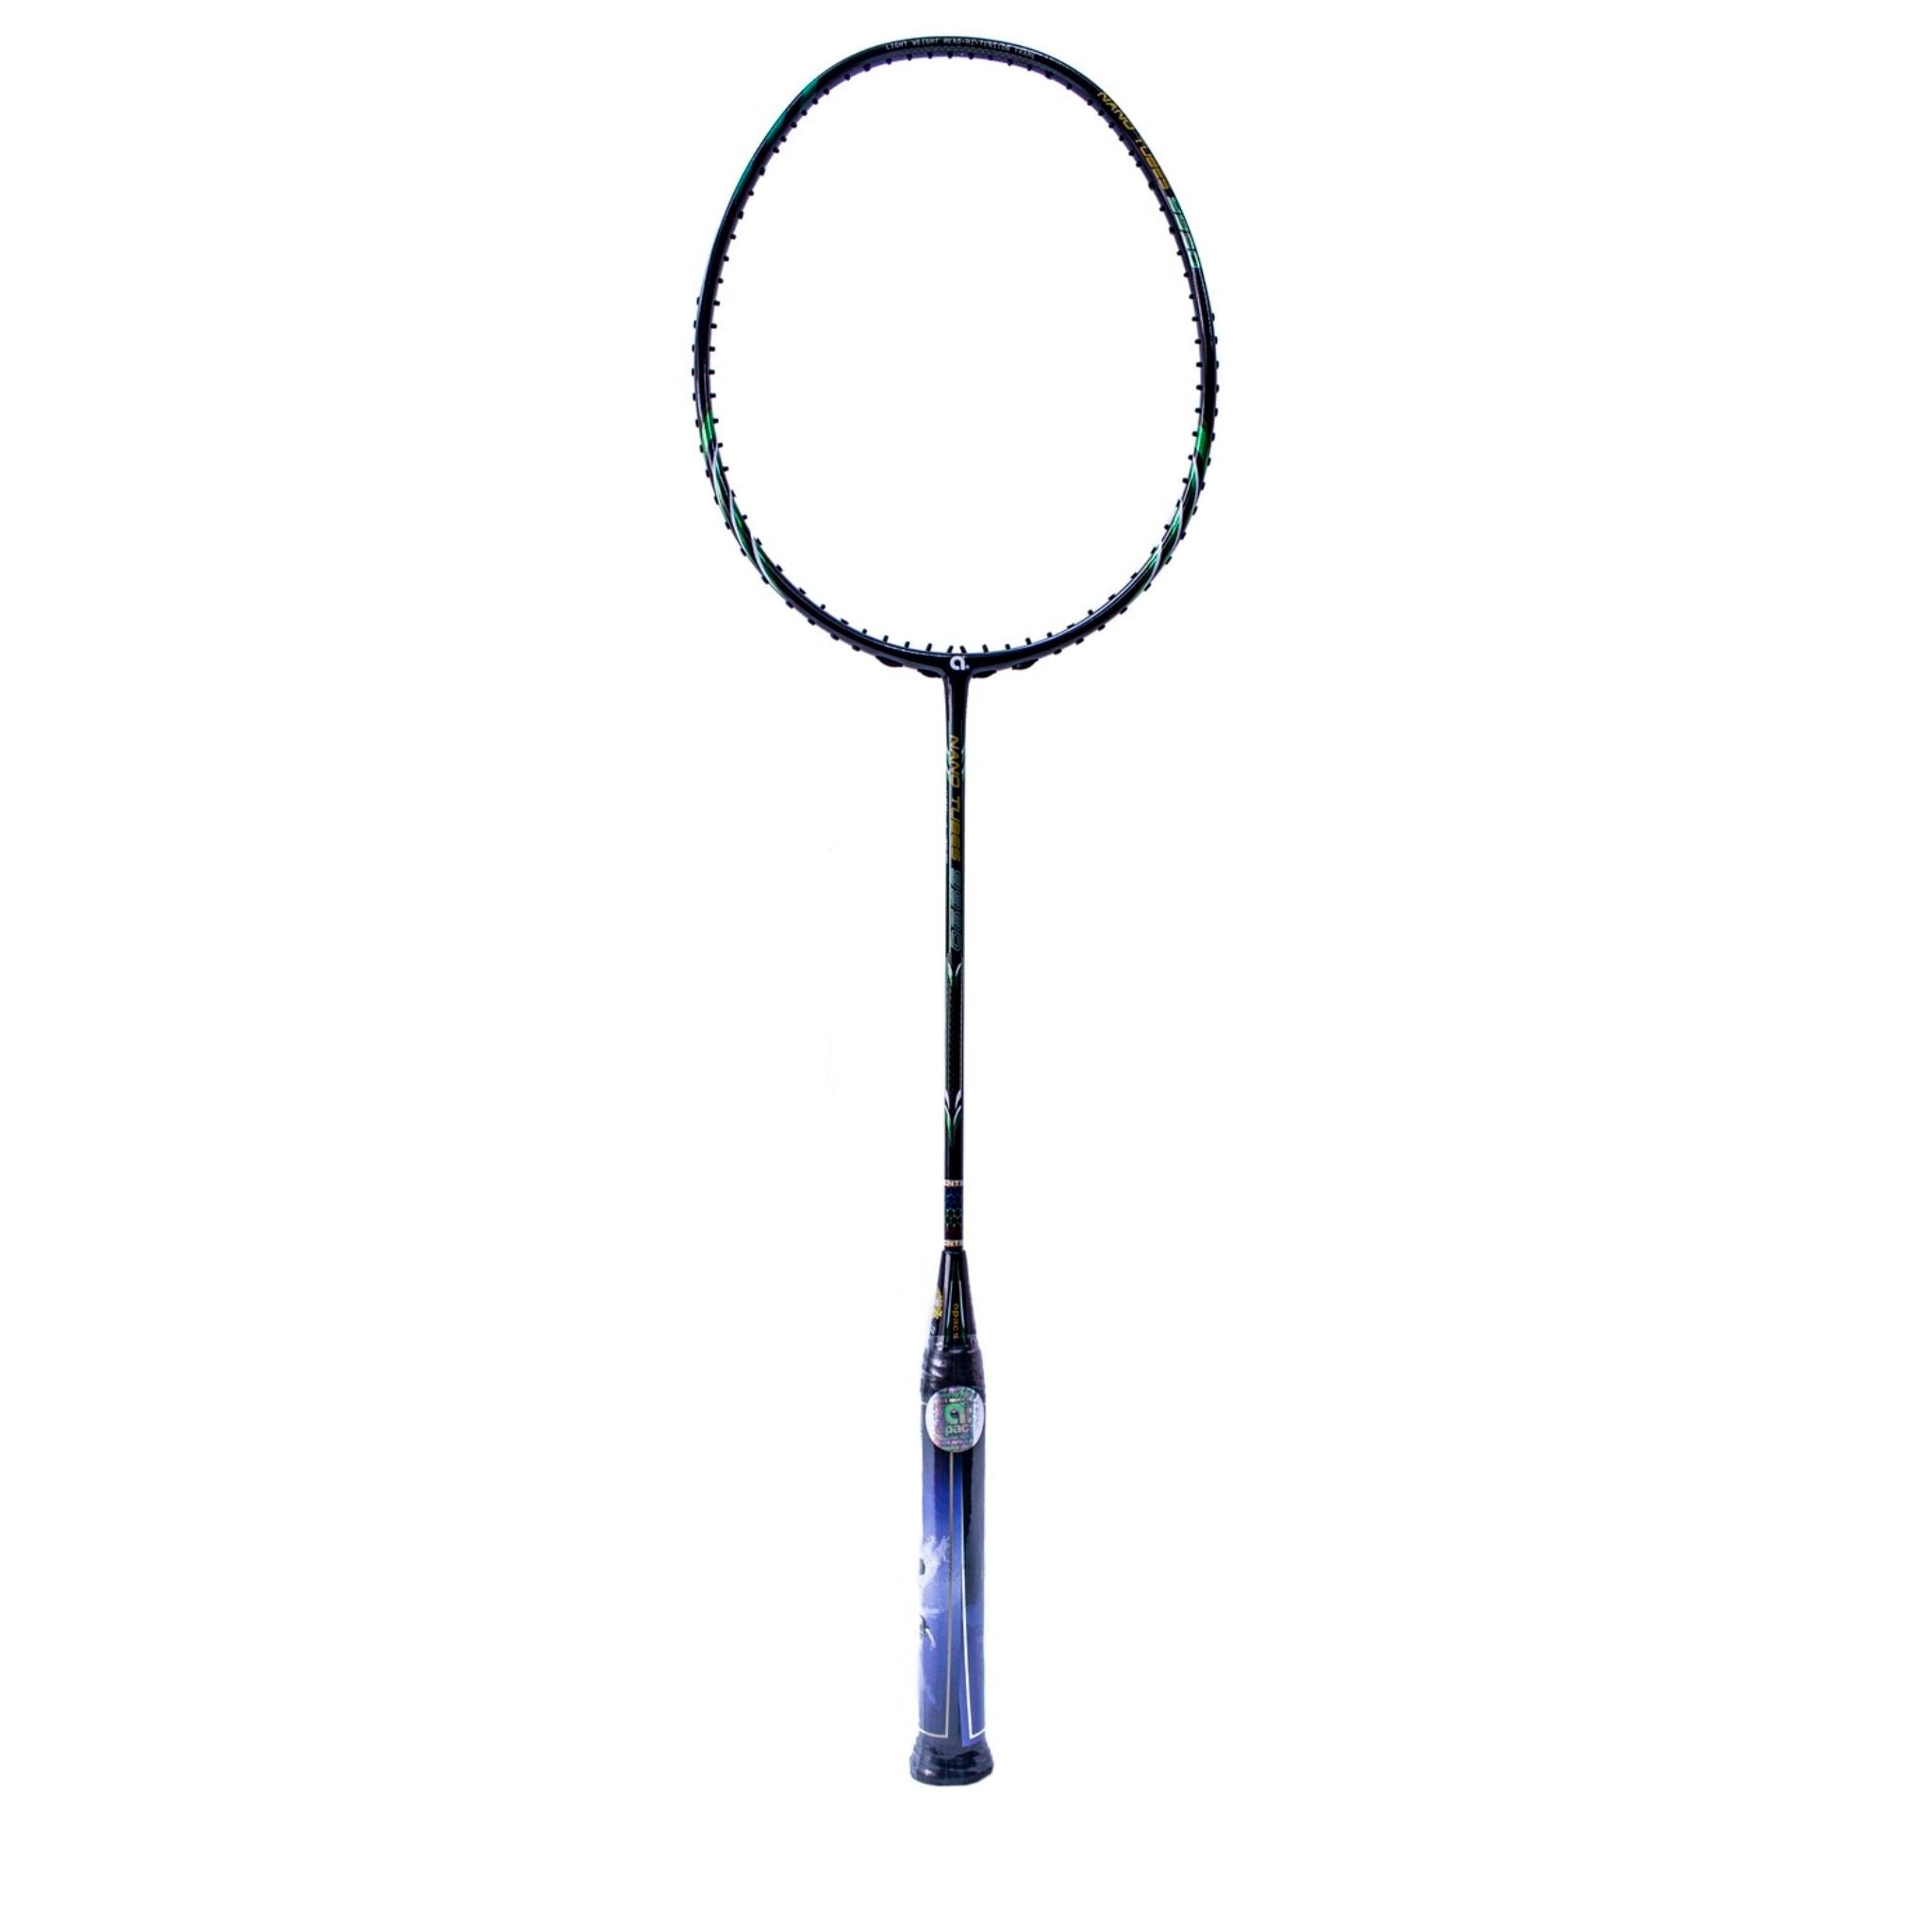 APACS Nano Tubes 9990 Badminton Racket